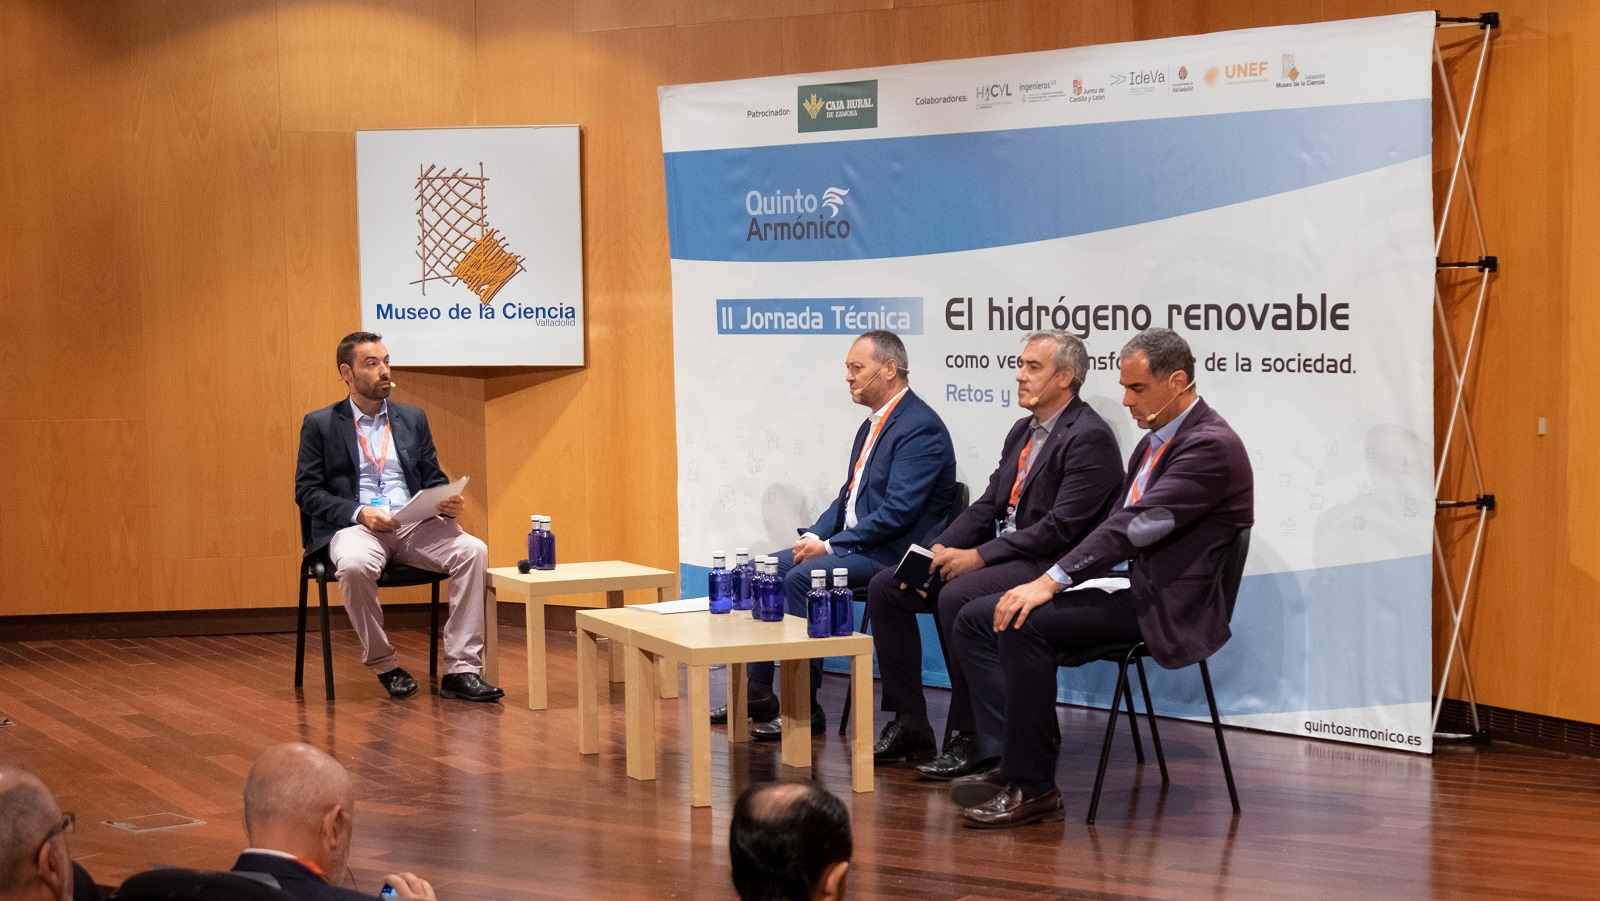 Valladolid se convierte en epicentro de la energía verde con la reunión de especialistas en hidrógeno renovable